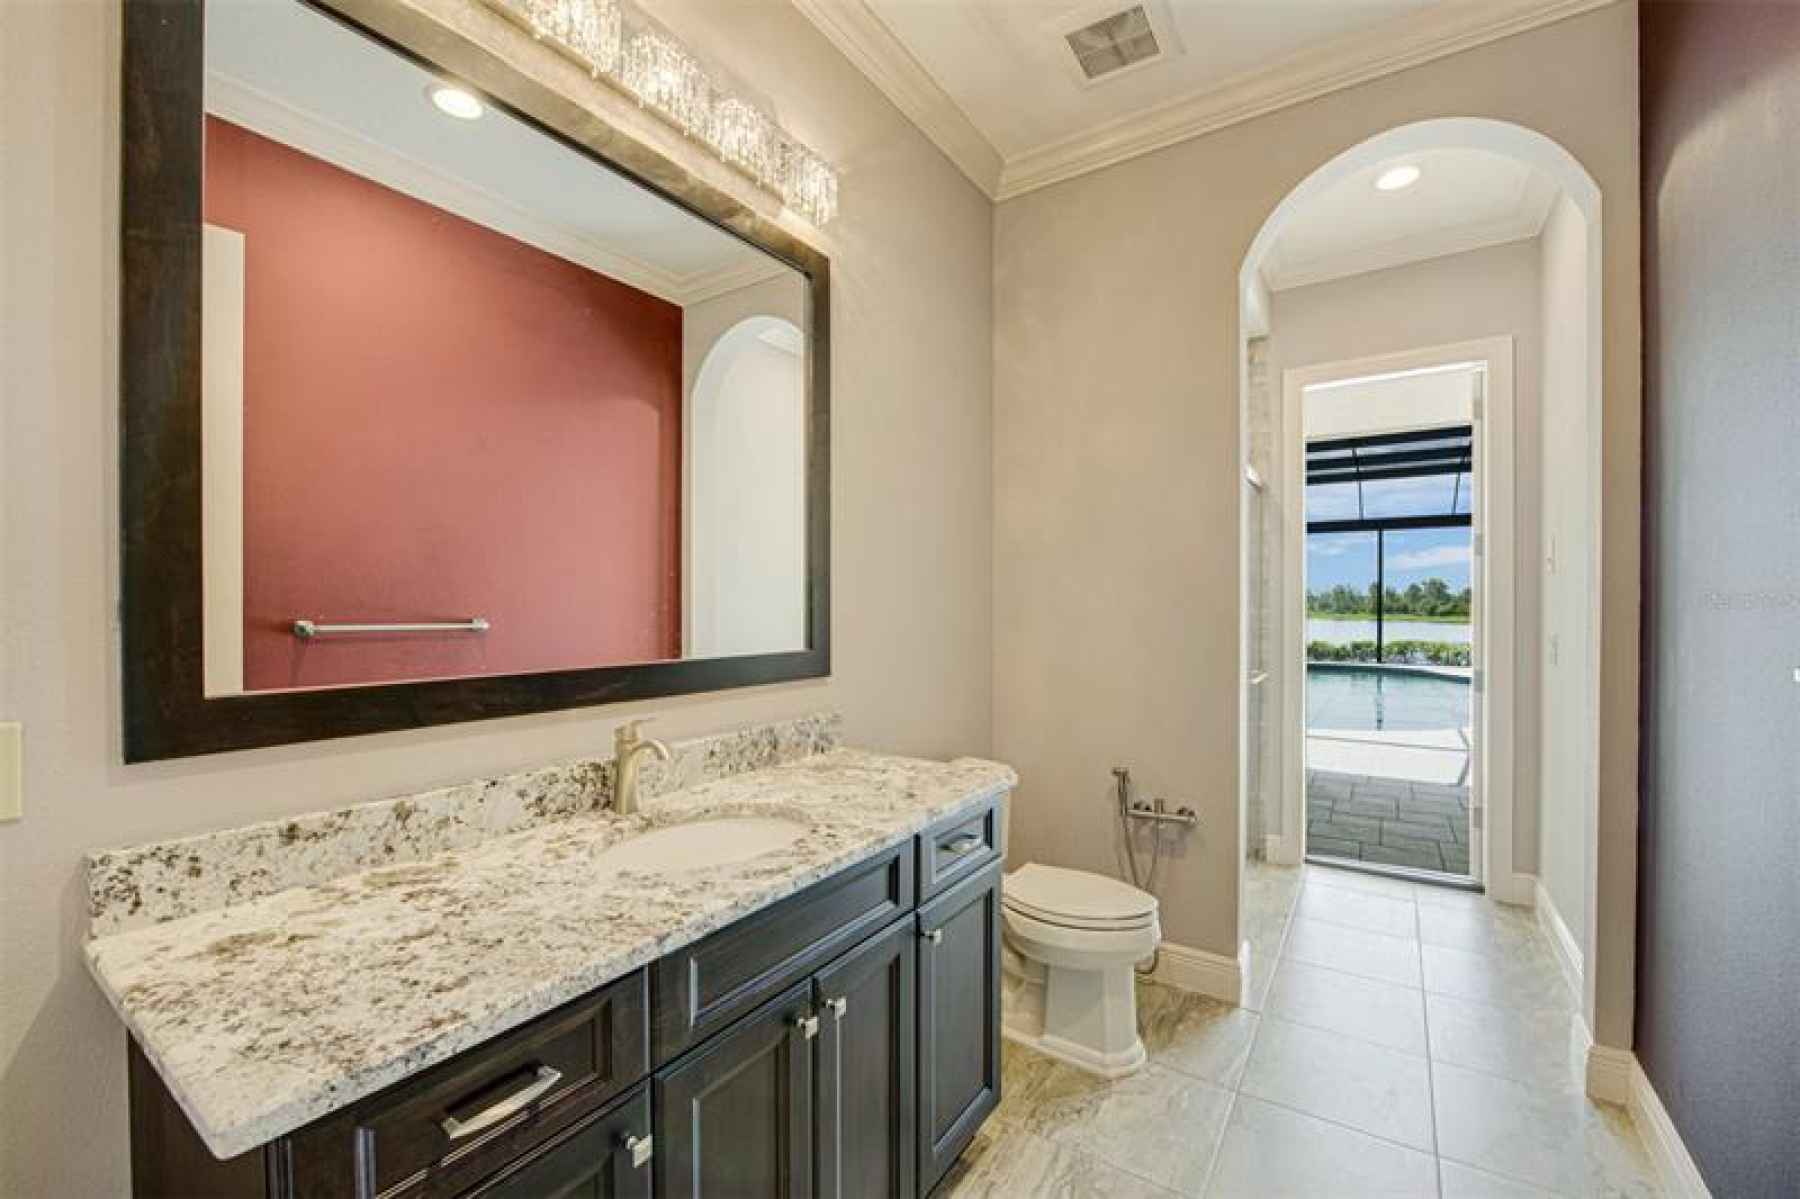 Bathroom 6 - First floor Cabana bathroom with glass shower